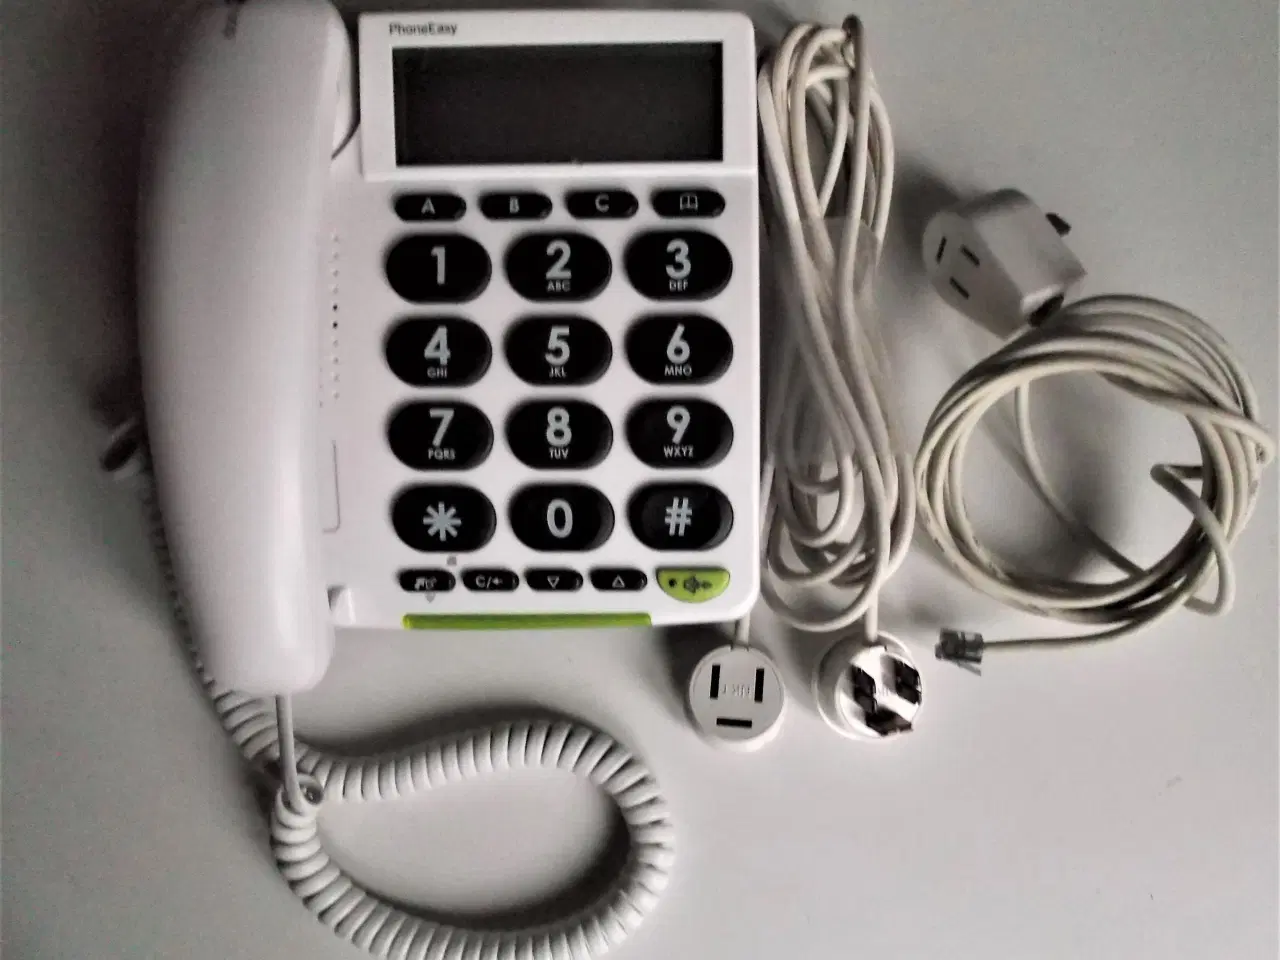 Billede 1 - Doro PhoneEasy 312cs er en ældrevenlig telefon med